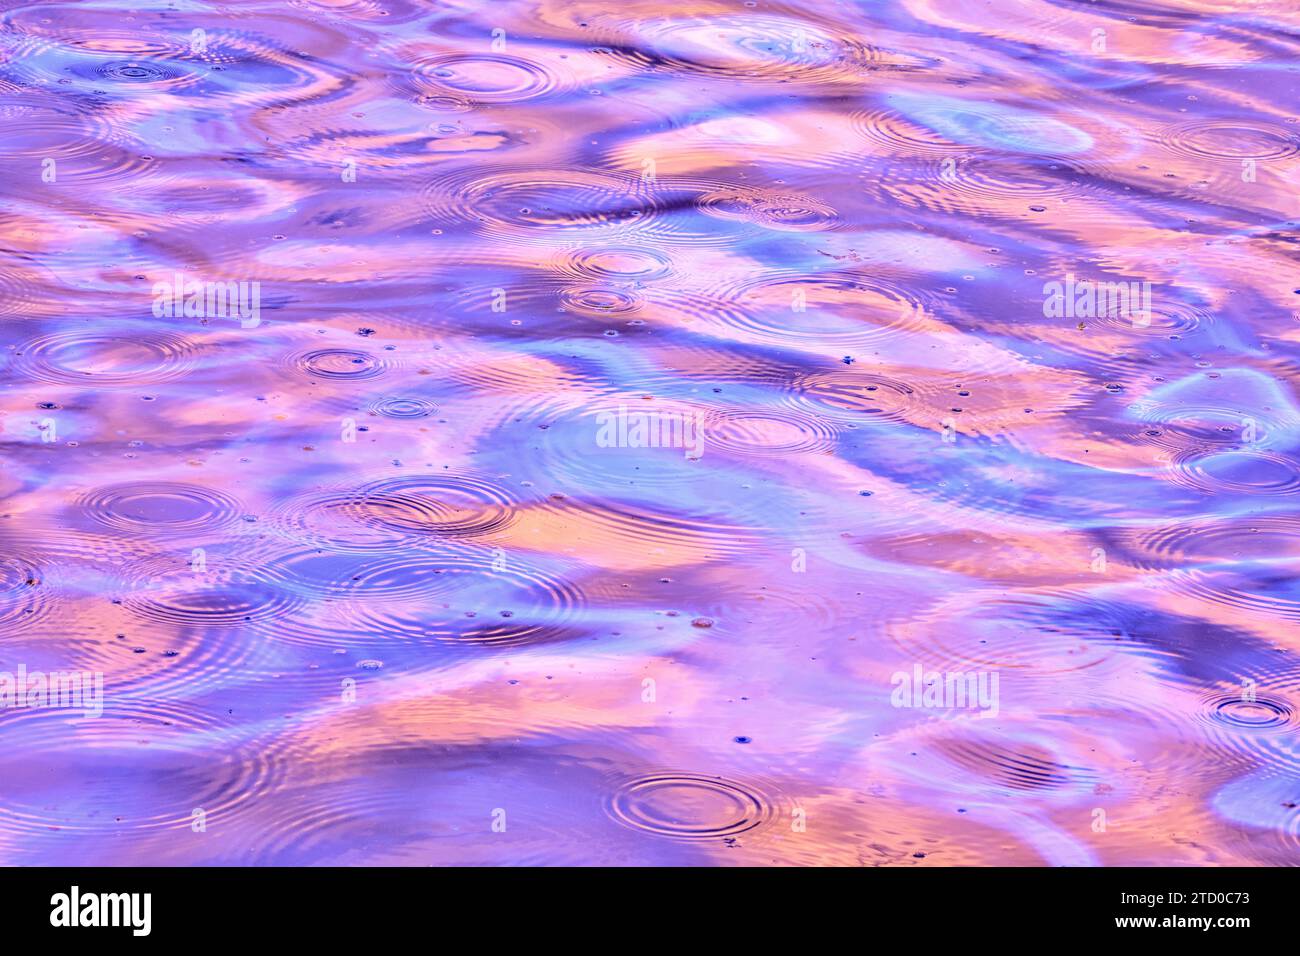 Una scena tranquilla caratterizzata da increspature su una superficie d'acqua, inondata di tonalità surreali di viola e rosa che riflettono una fonte di luce invisibile. Foto Stock